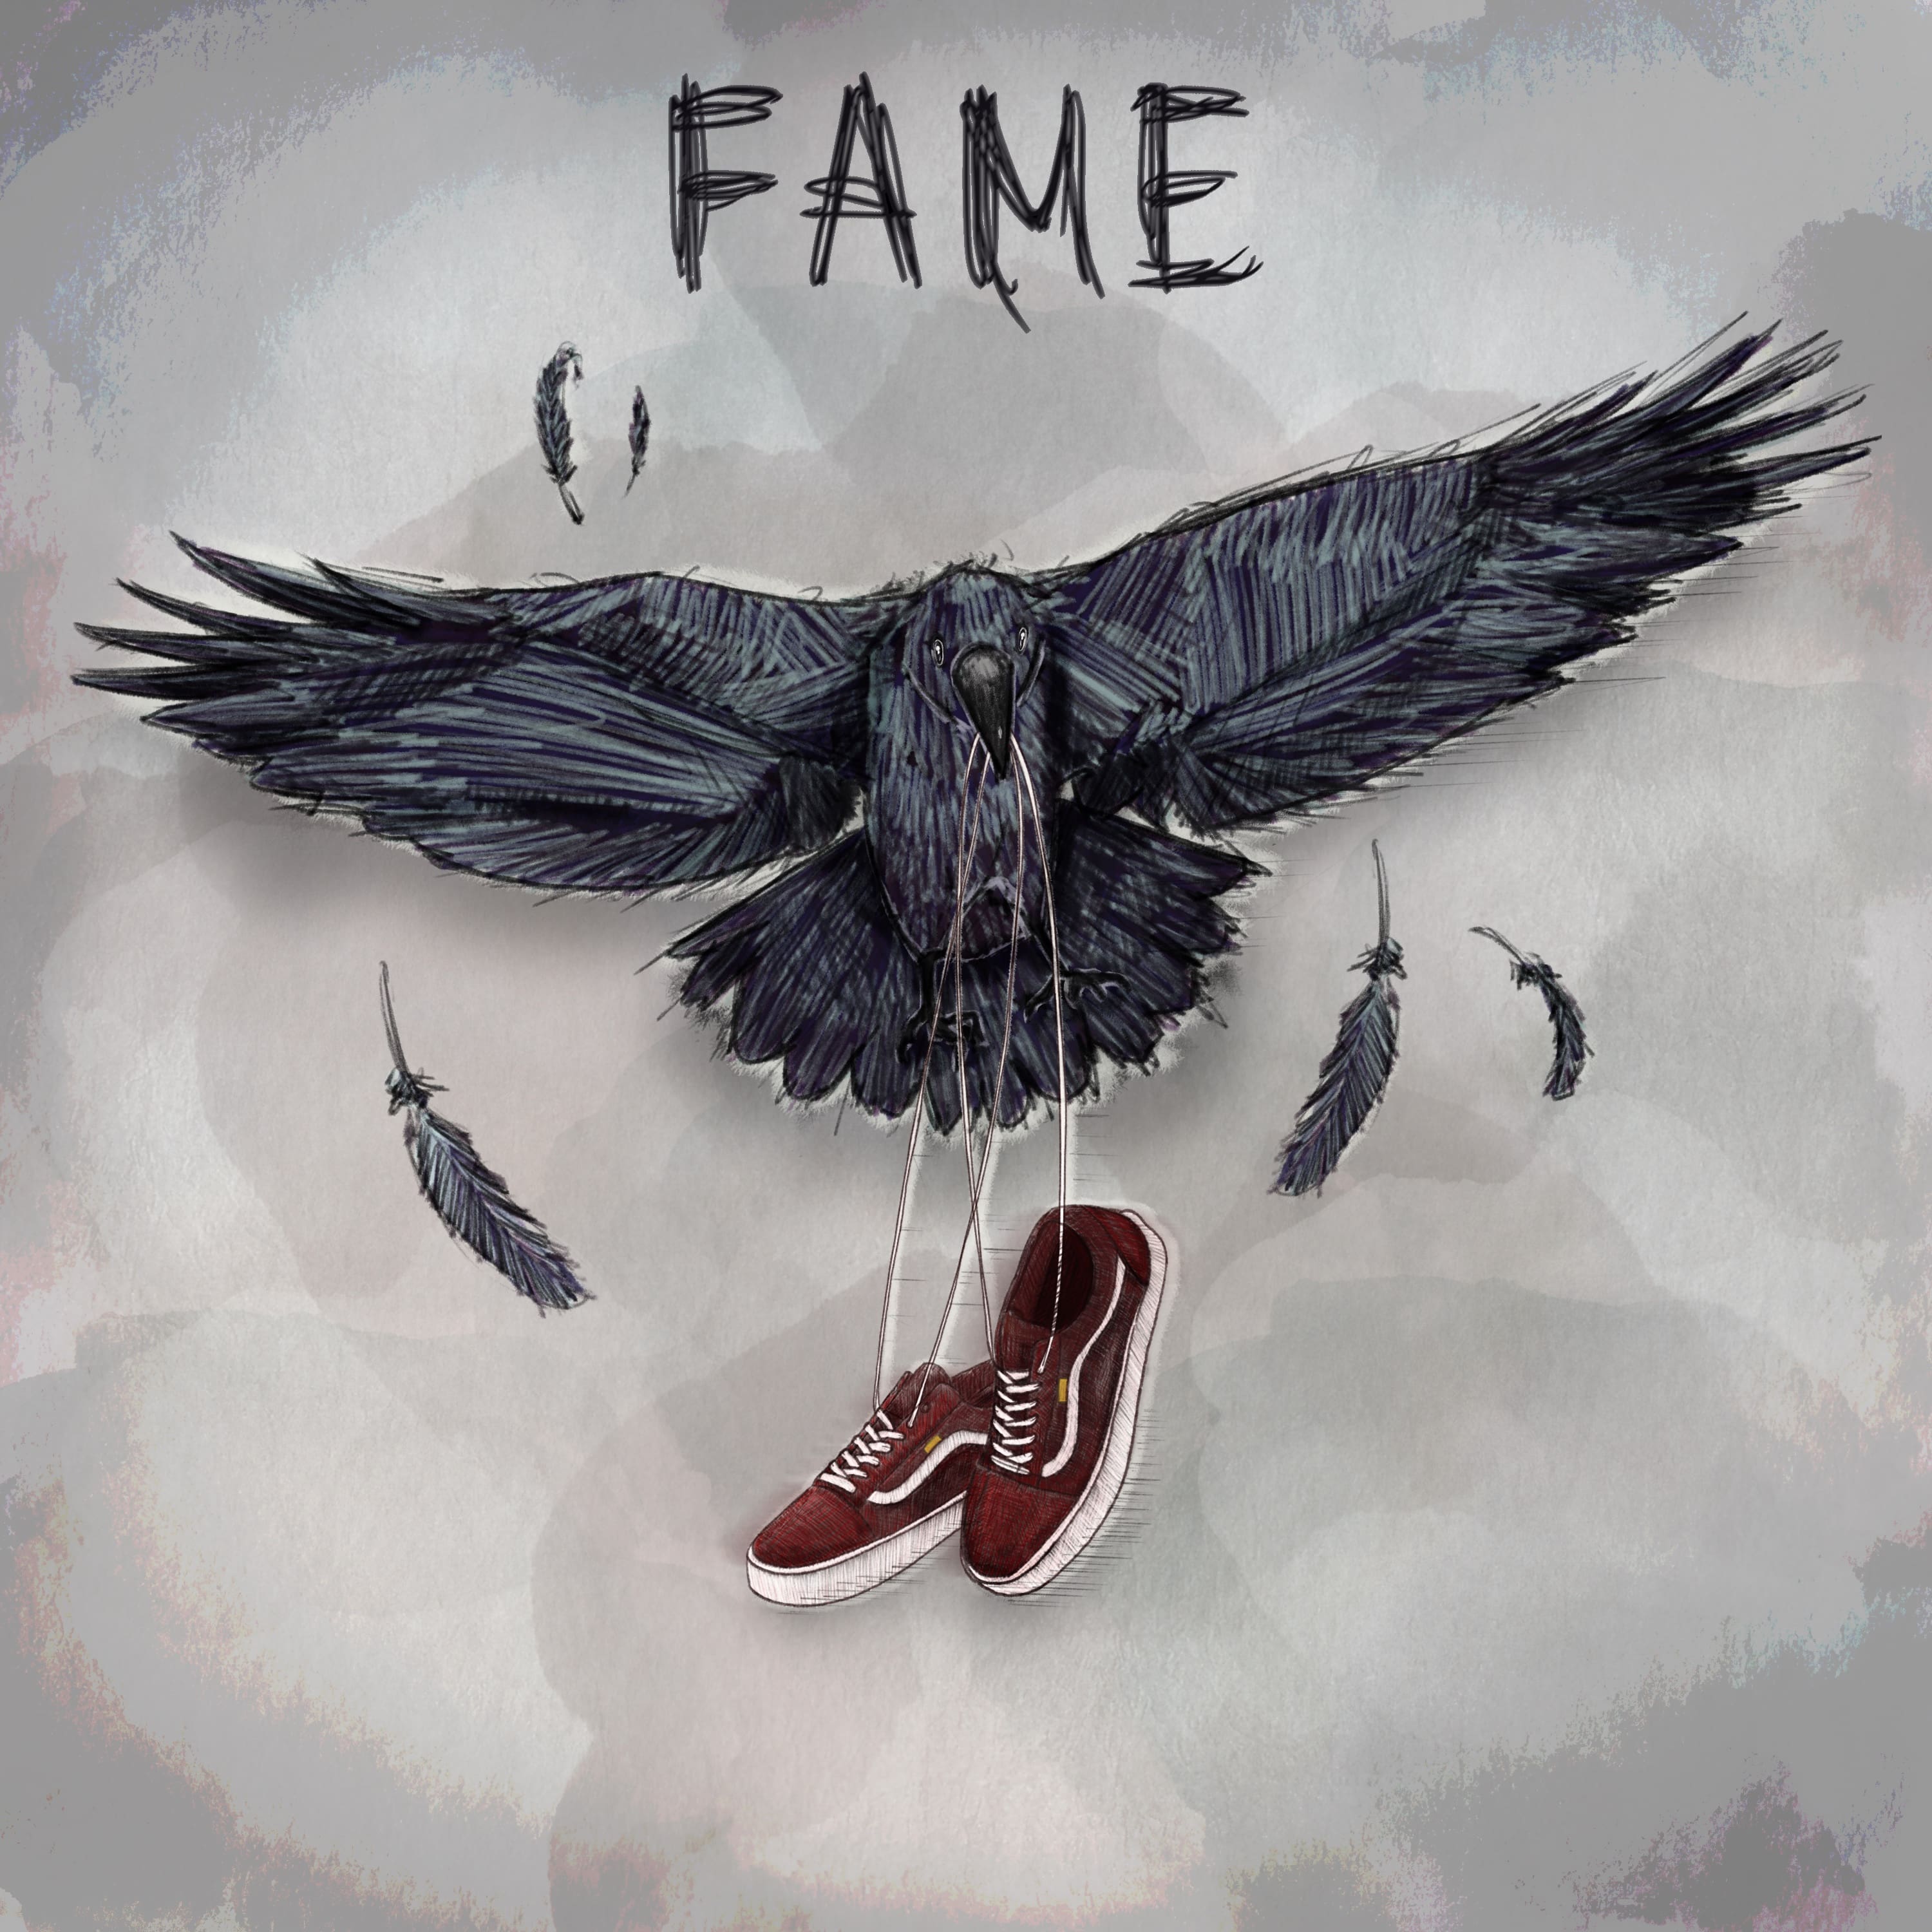 Fame, il nuovo ep degli Urbania [Recensione] 4